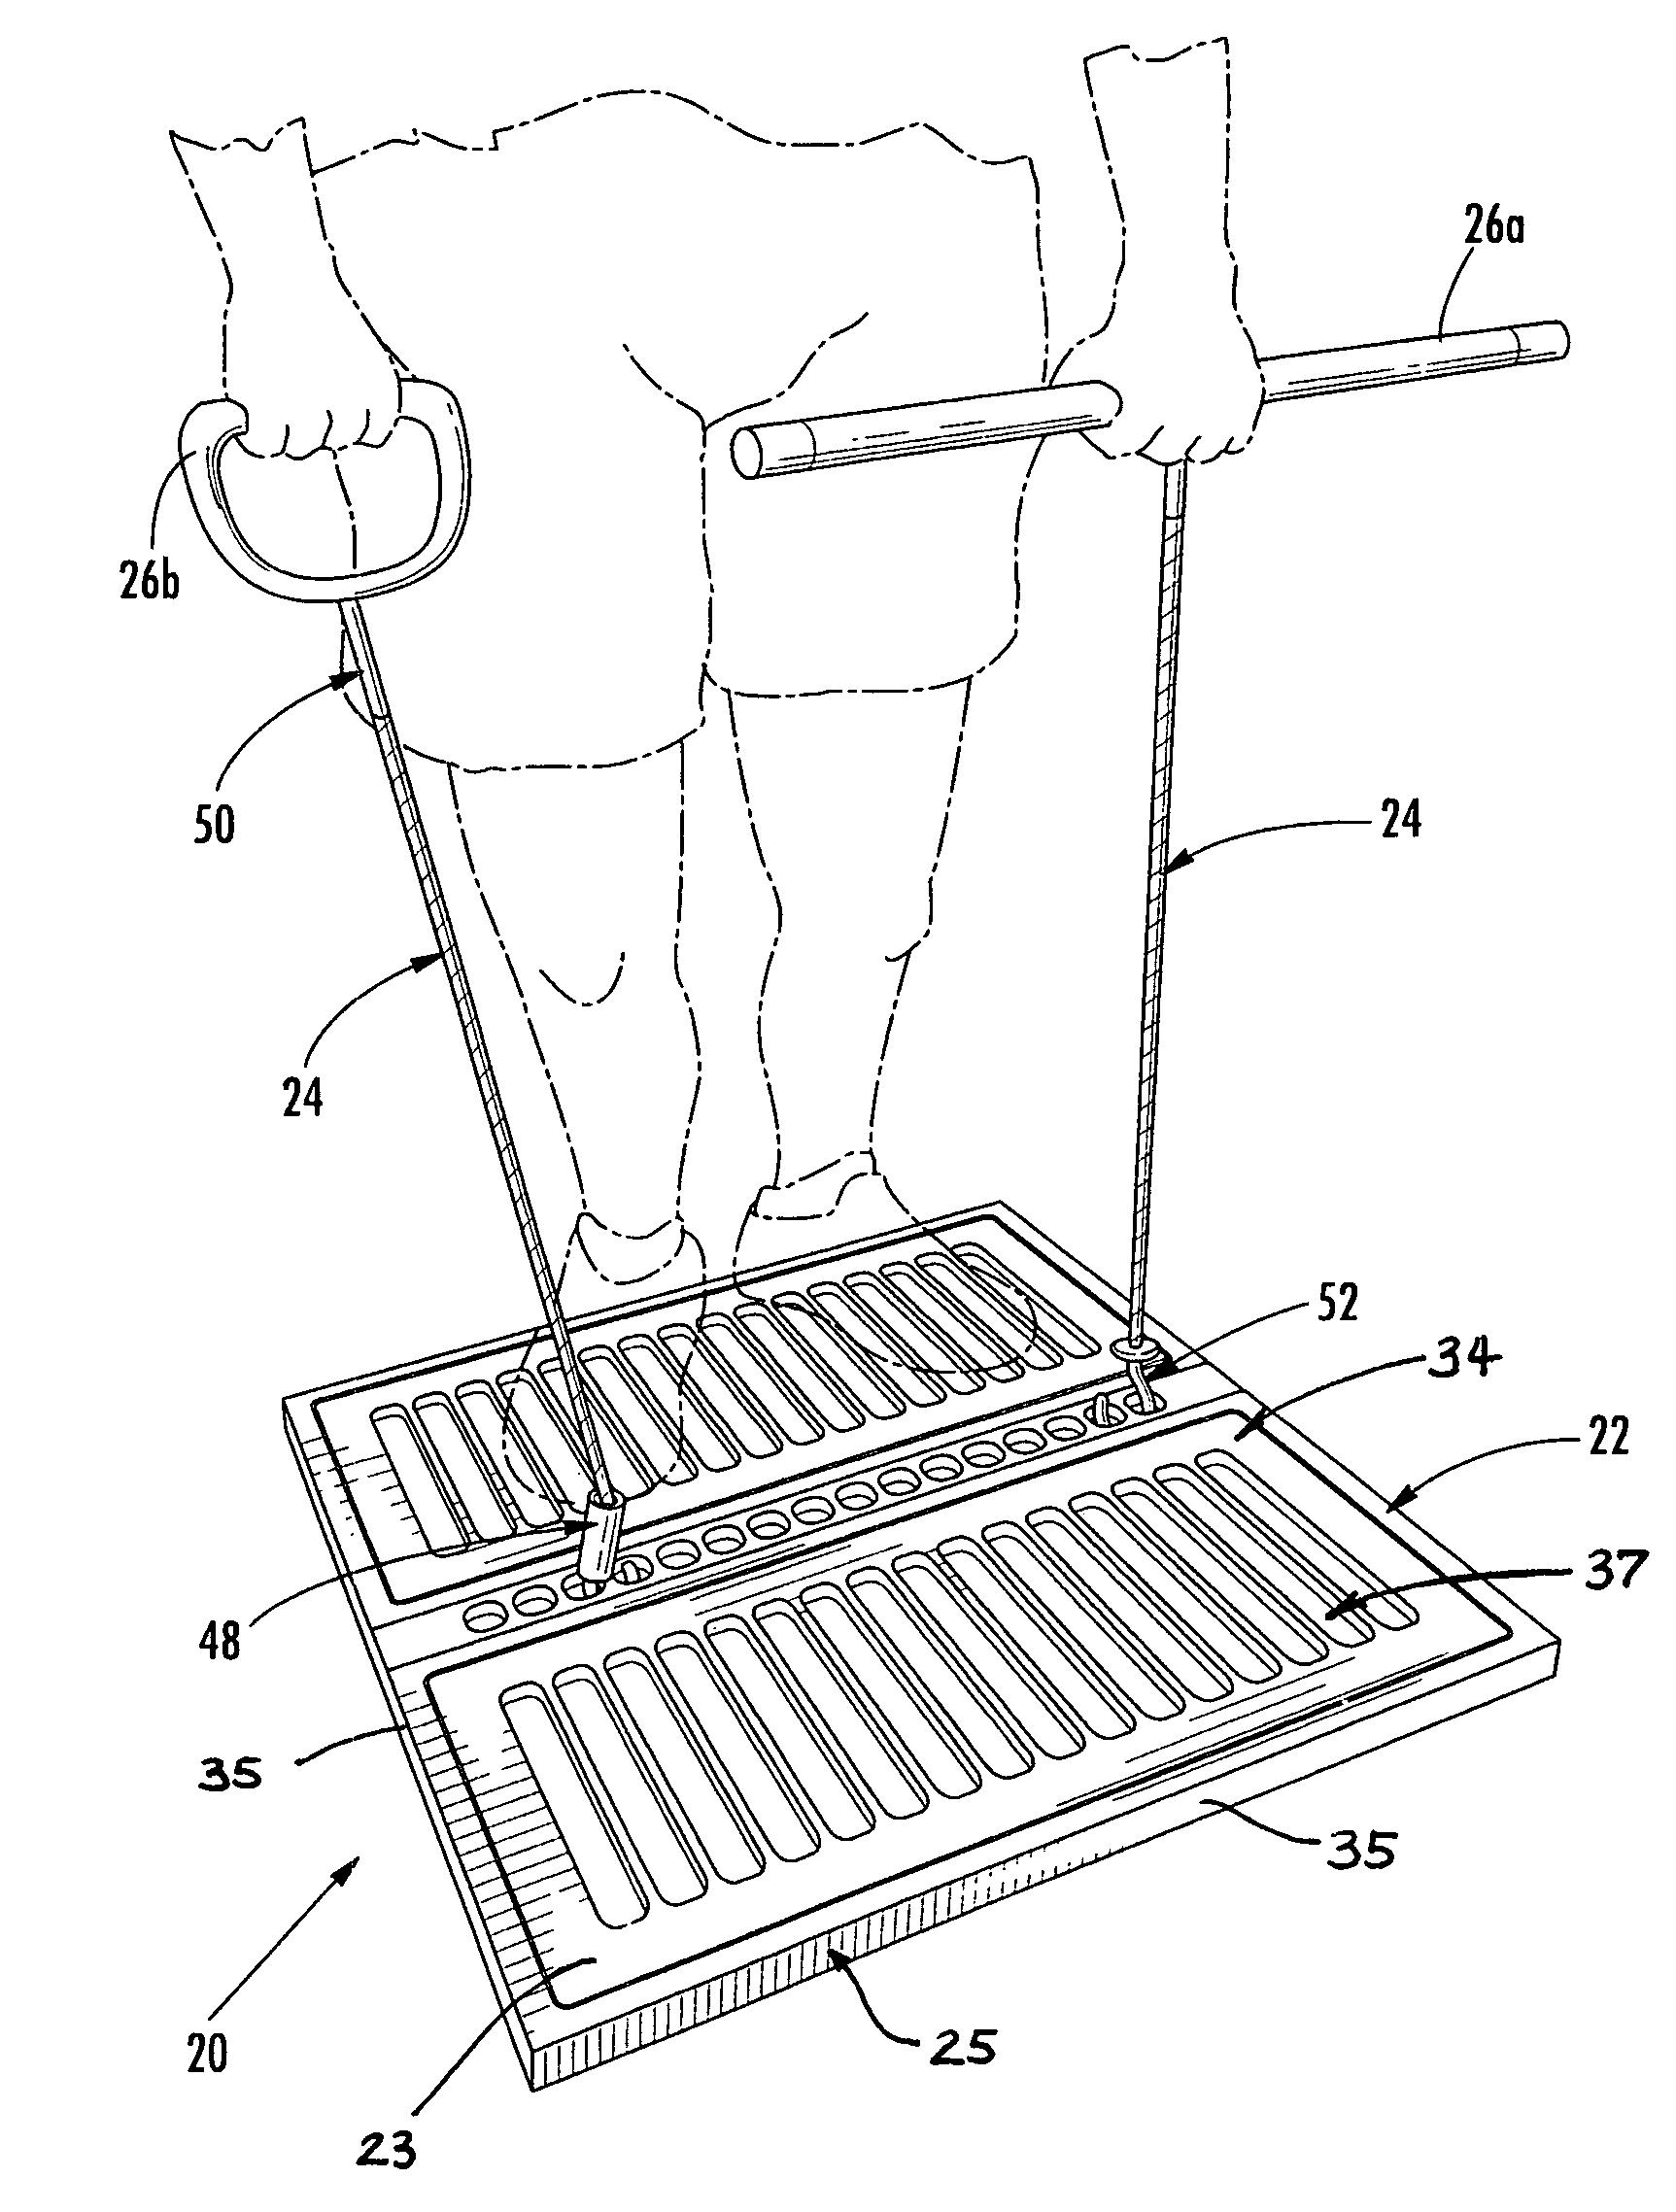 Platform exercise apparatus